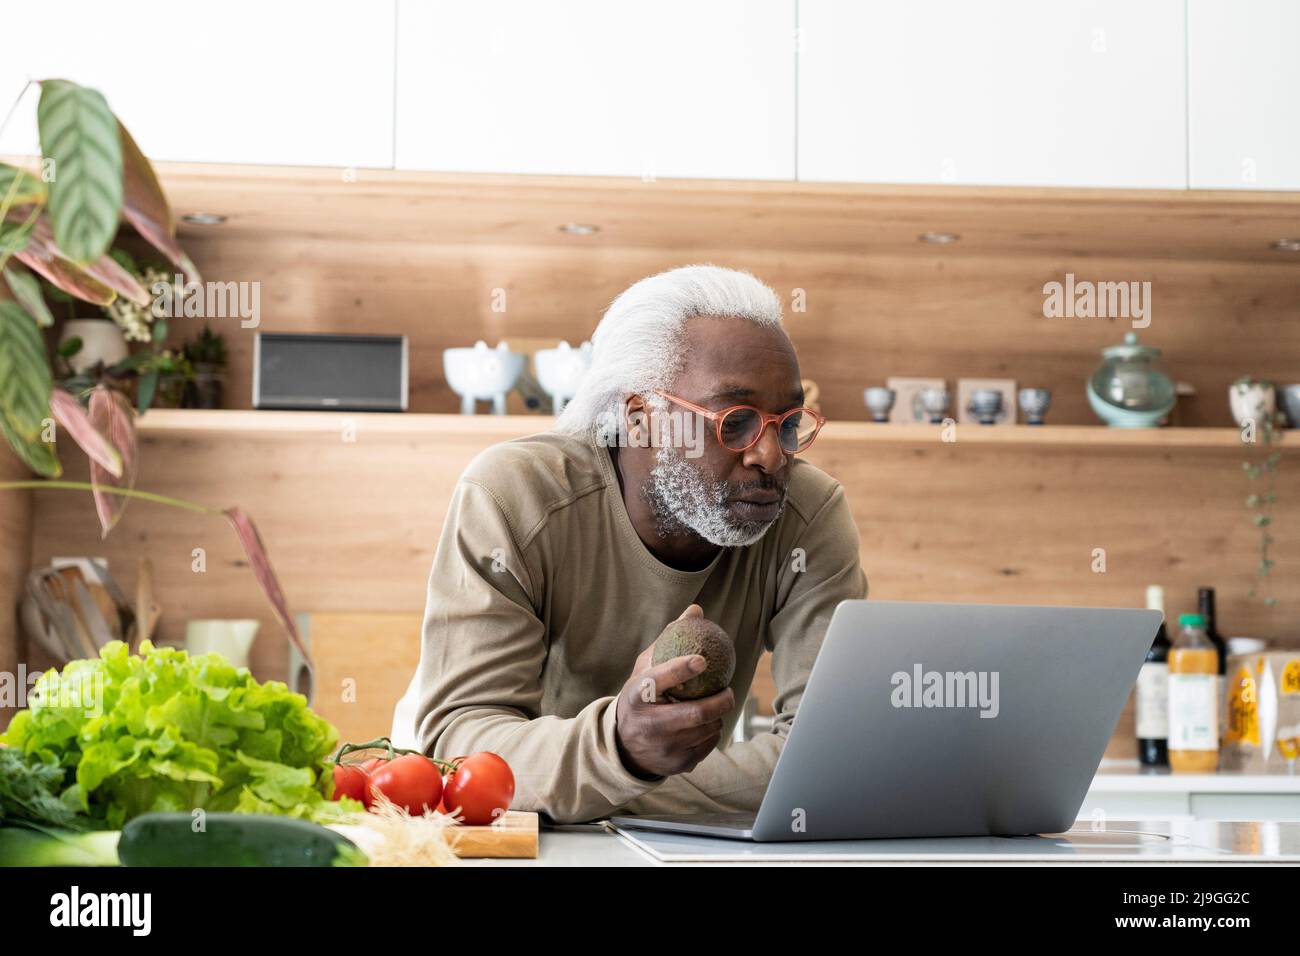 Senior man watching recipe on laptop while leaning on kitchen worktop Stock Photo